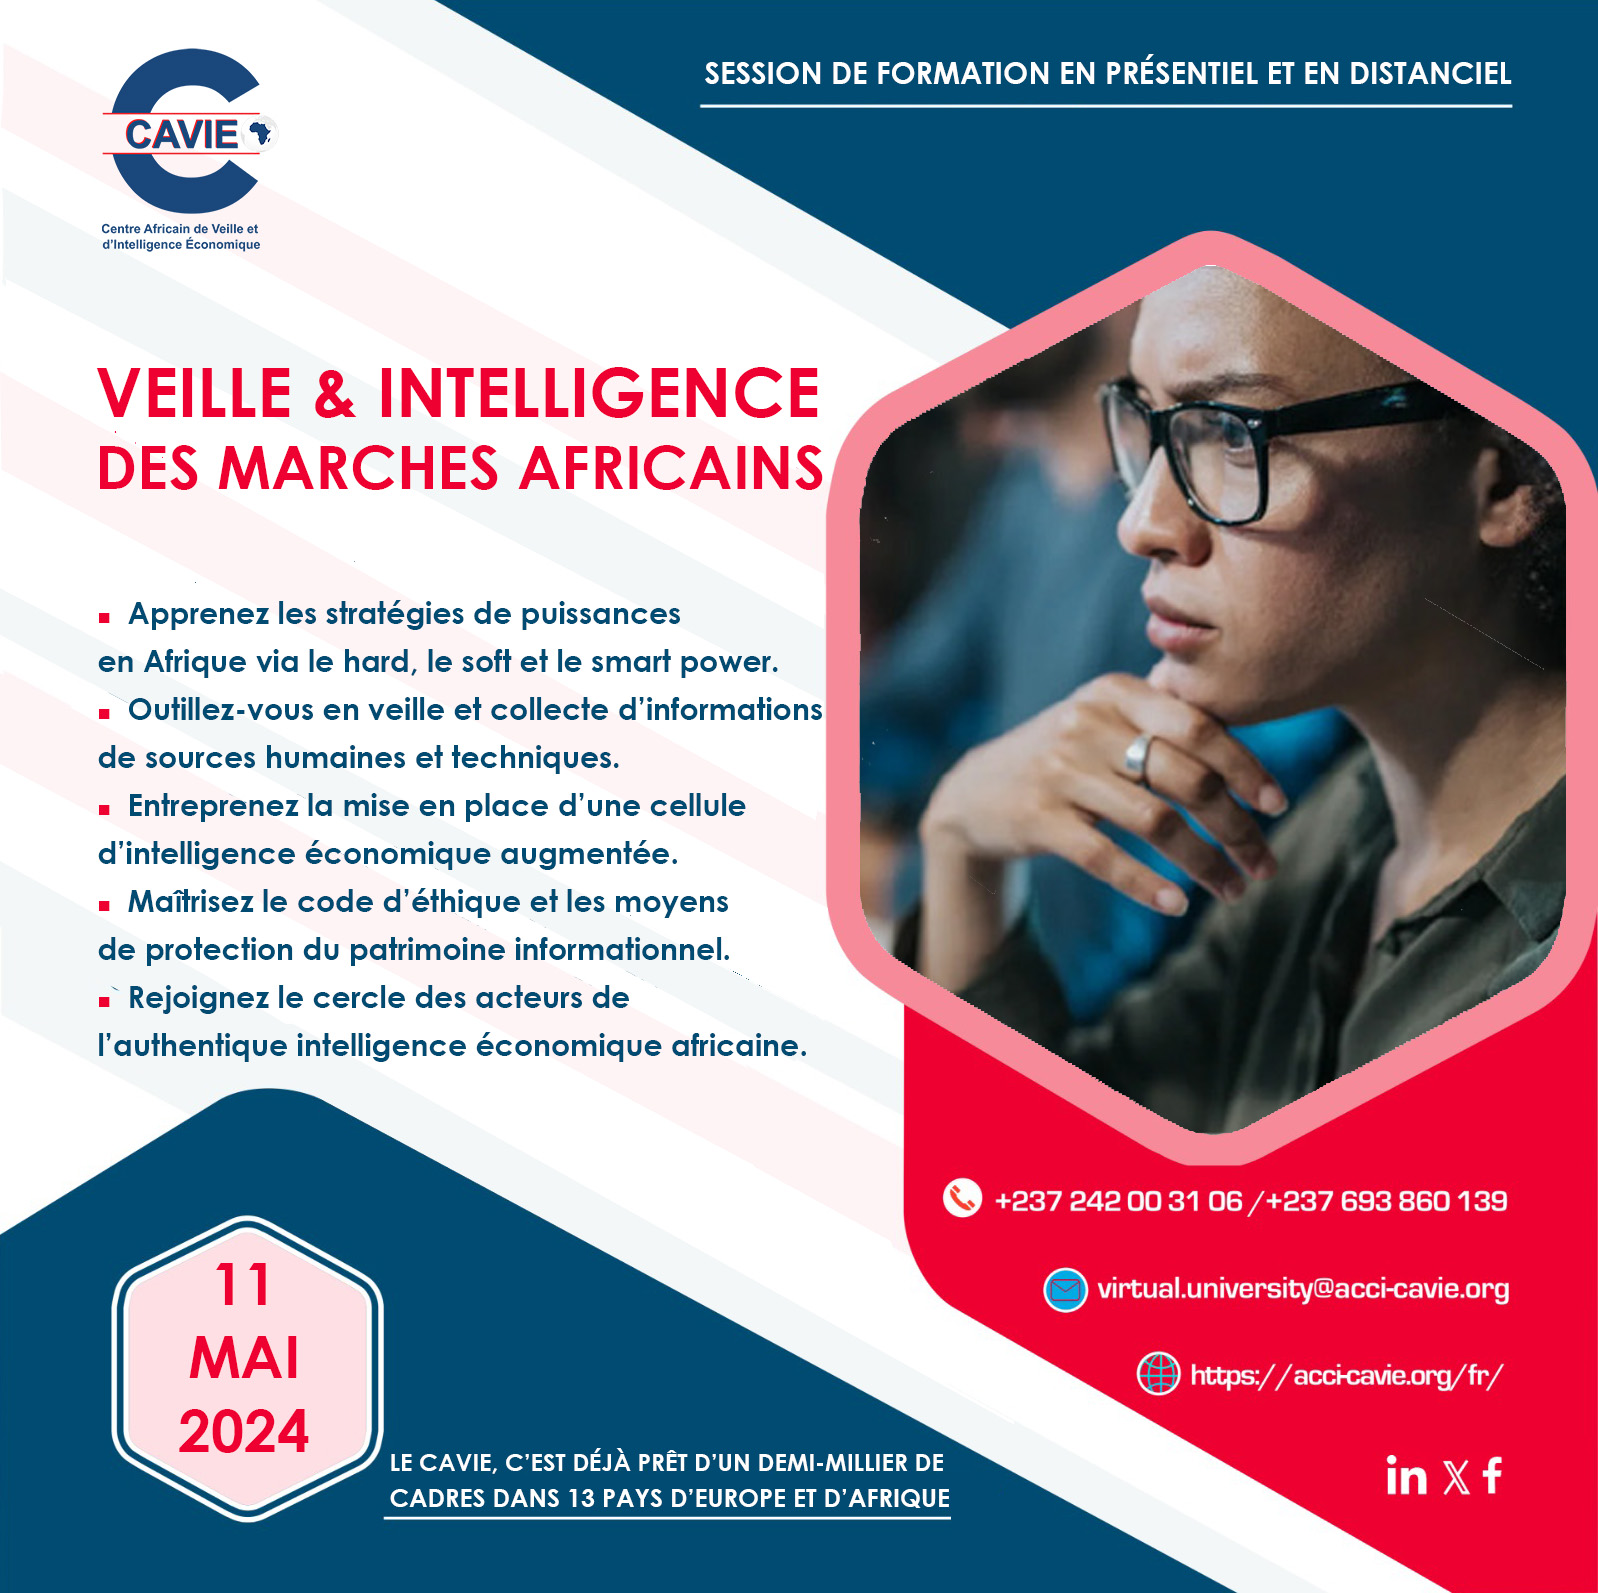 You are currently viewing Veille & intelligence des marches africains, le 11 mai 2024 en ligne et en présentiel